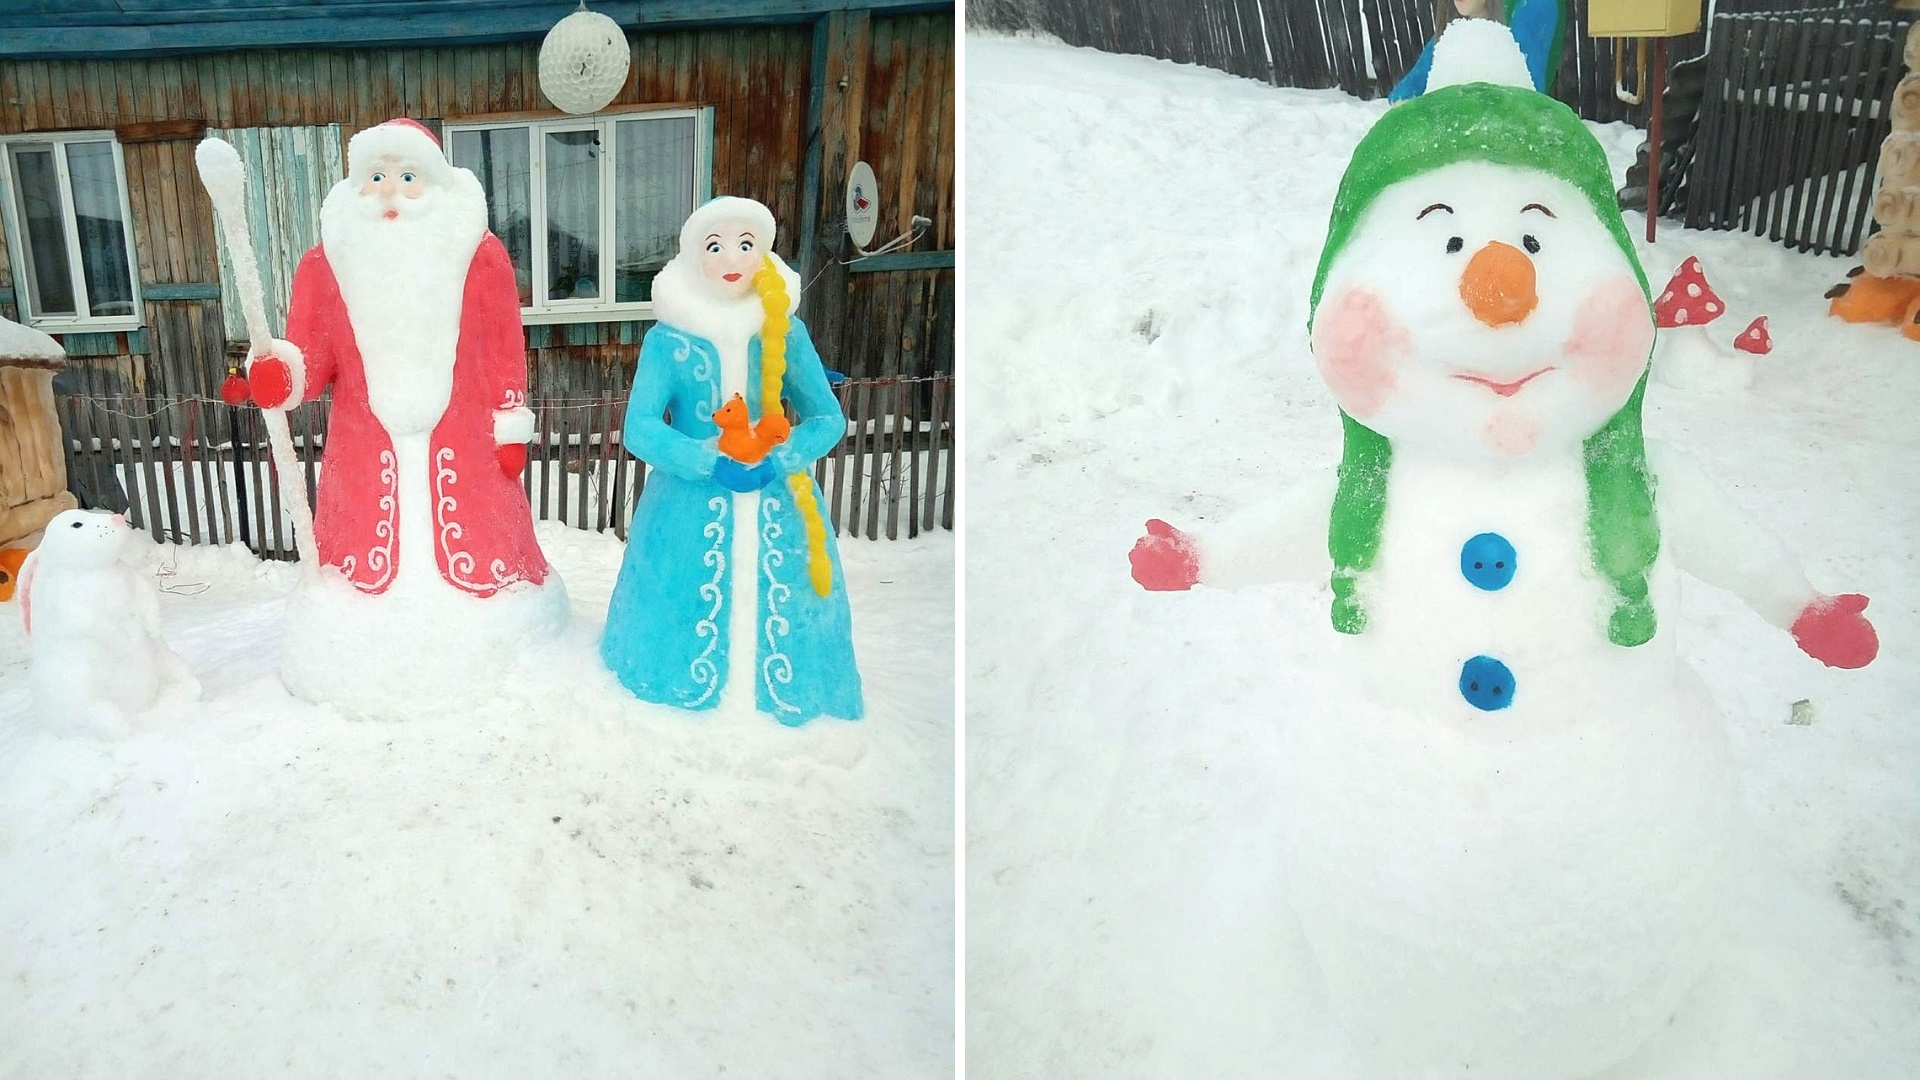 Зайцы, белки, снеговик и даже Баба Яга в ступе с метлой соседствуют со снеговиком и главными новогодними героями